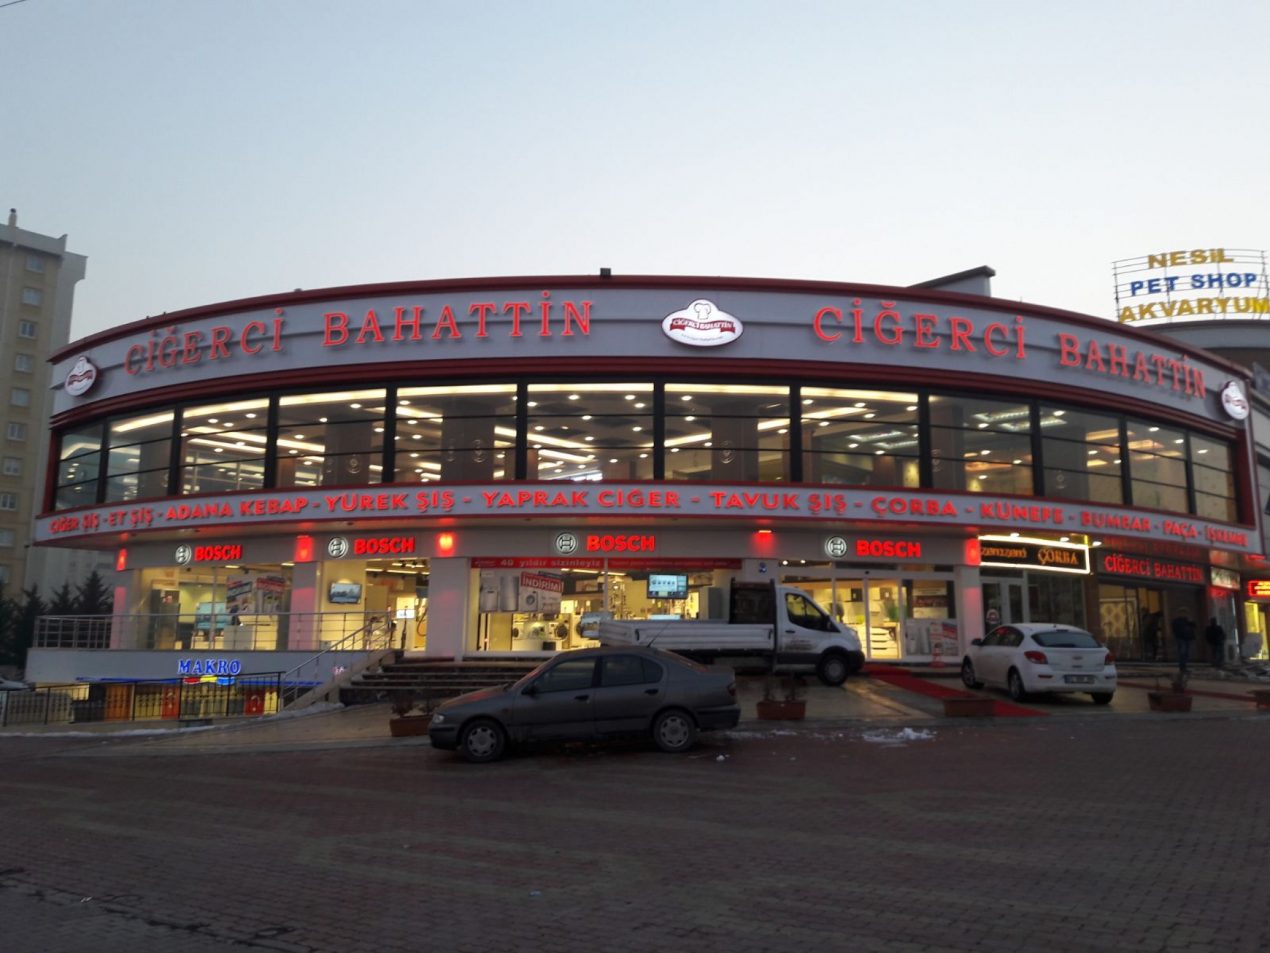 Ciğerci Bahattin - Eskişehir’de Yemek Yerleri